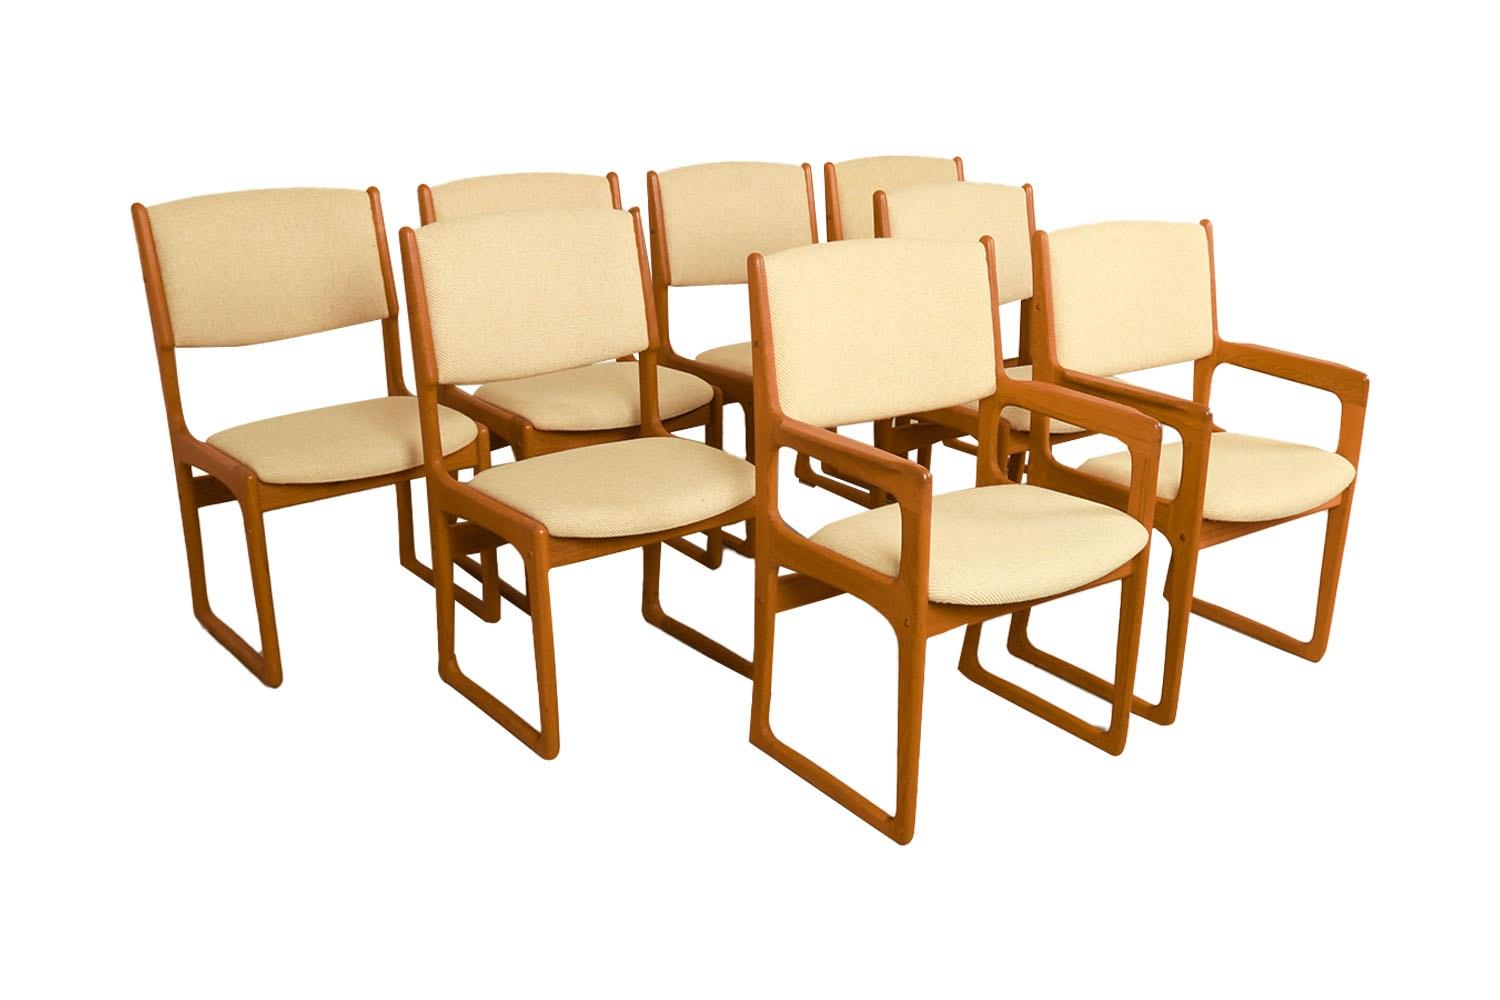 Ensemble de huit chaises de salle à manger en teck, magnifiquement sculptées, conçues par Benny Linden. Label du fabricant sous le siège {Benny Linden Design}. Superbement réalisées, sculptées, les chaises de salle à manger modernes en teck avec